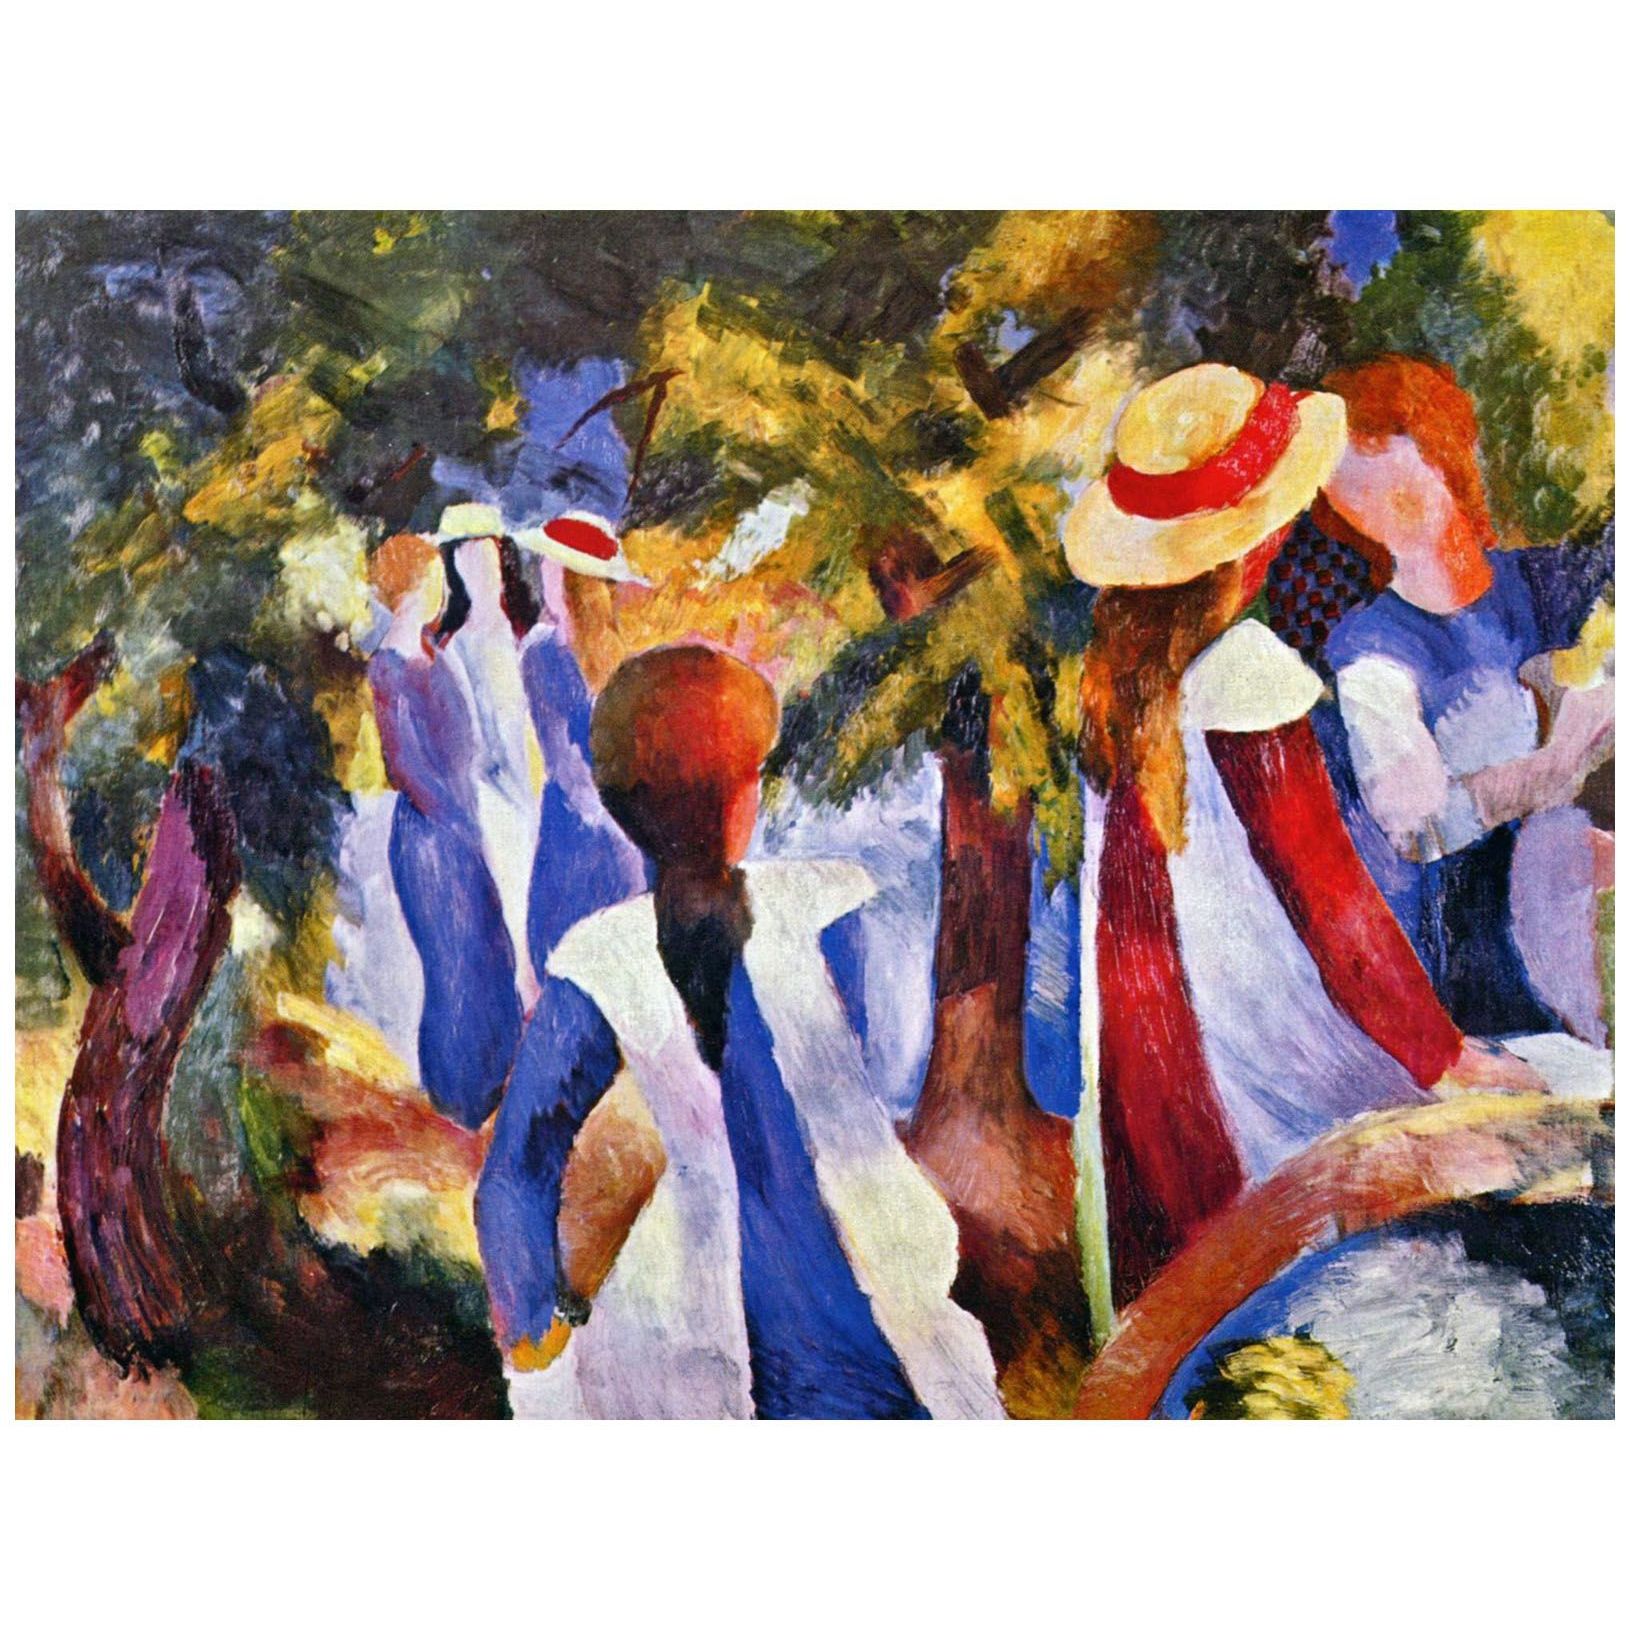 August Macke. Mädchen unter Bäumen. 1914. Neue Pinakothek Munchen